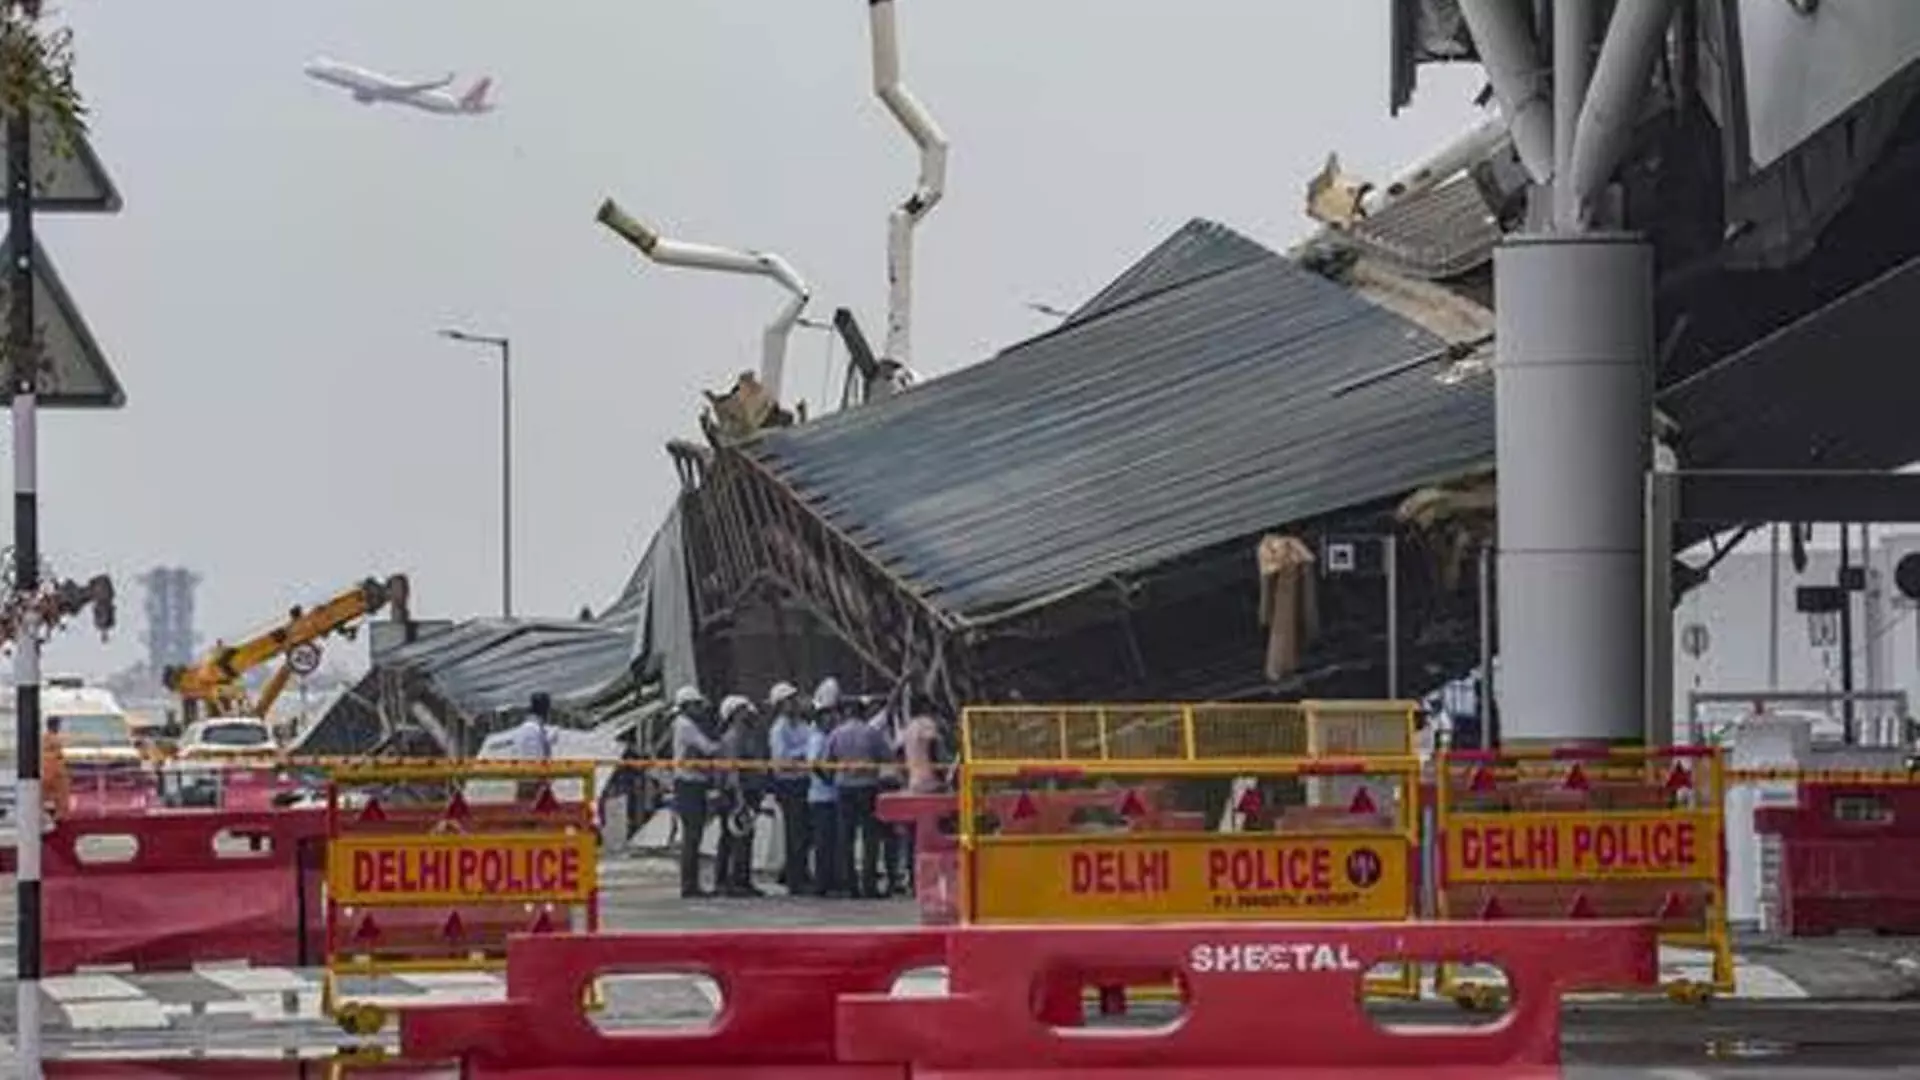 DEHLI: दिल्ली हवाई अड्डे के टर्मिनल 1 पर ढही छतरी को हटाने का काम शुरू